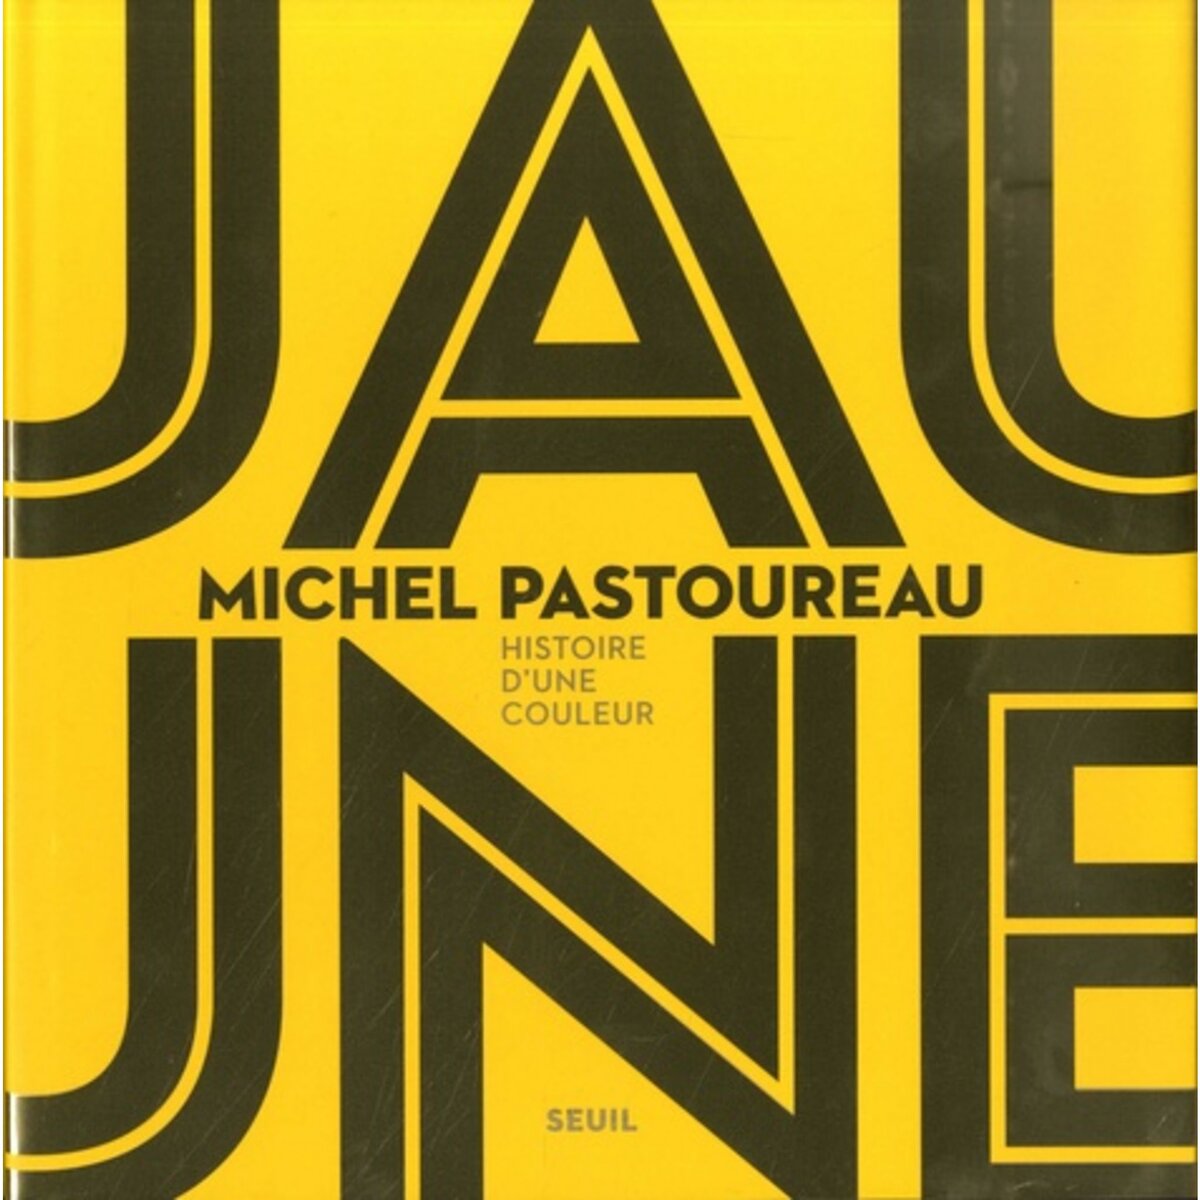  JAUNE. HISTOIRE D'UNE COULEUR, Pastoureau Michel